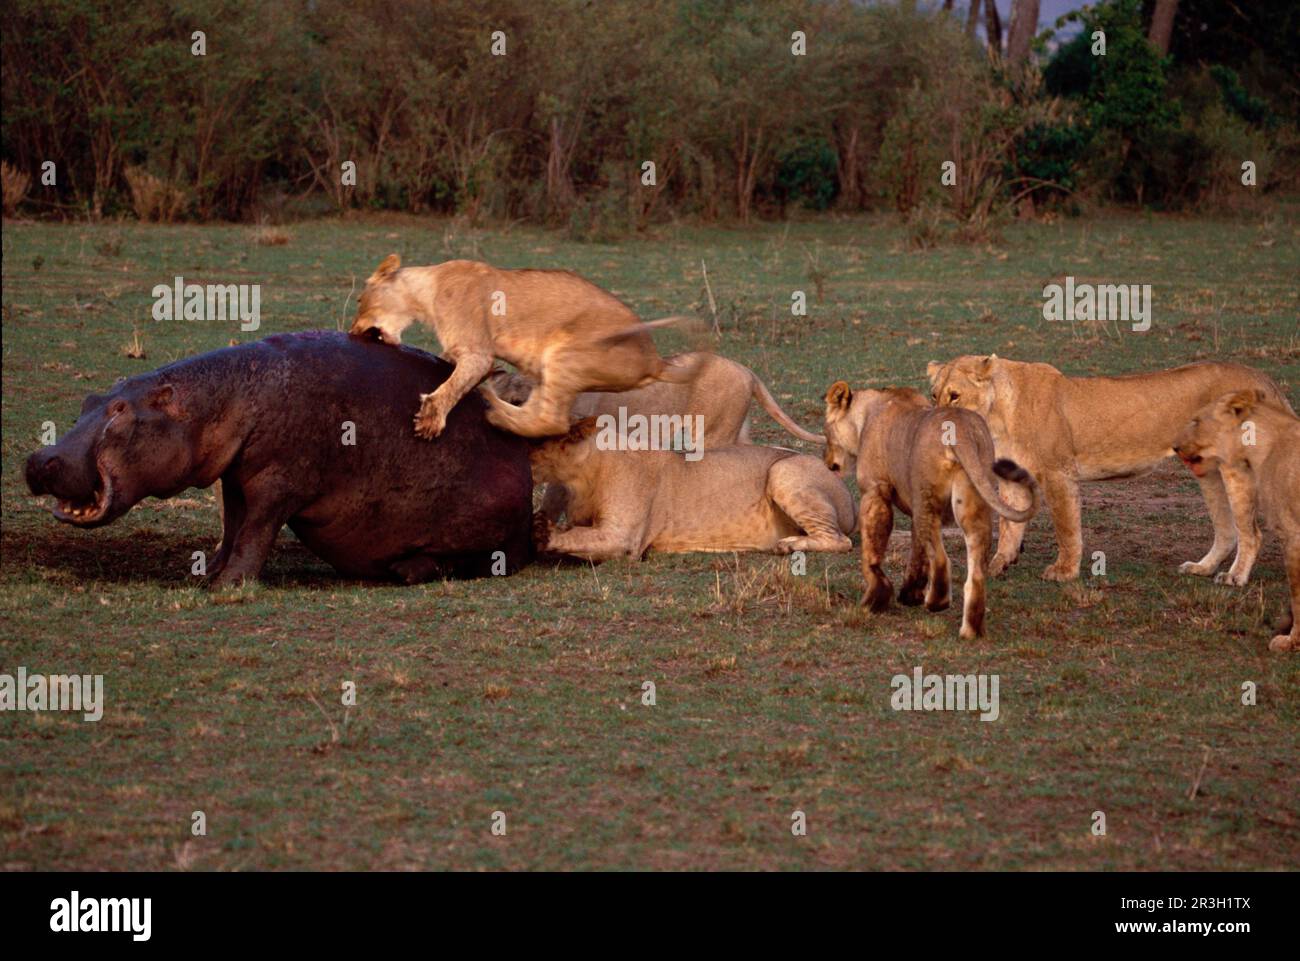 Leone africano Niche leone senza leone, leoni (Panthera leo), gatti grandi, predatori, mammiferi, Animali, Leone ippopotamo che viene attaccato da leoni, Masai Mara Foto Stock